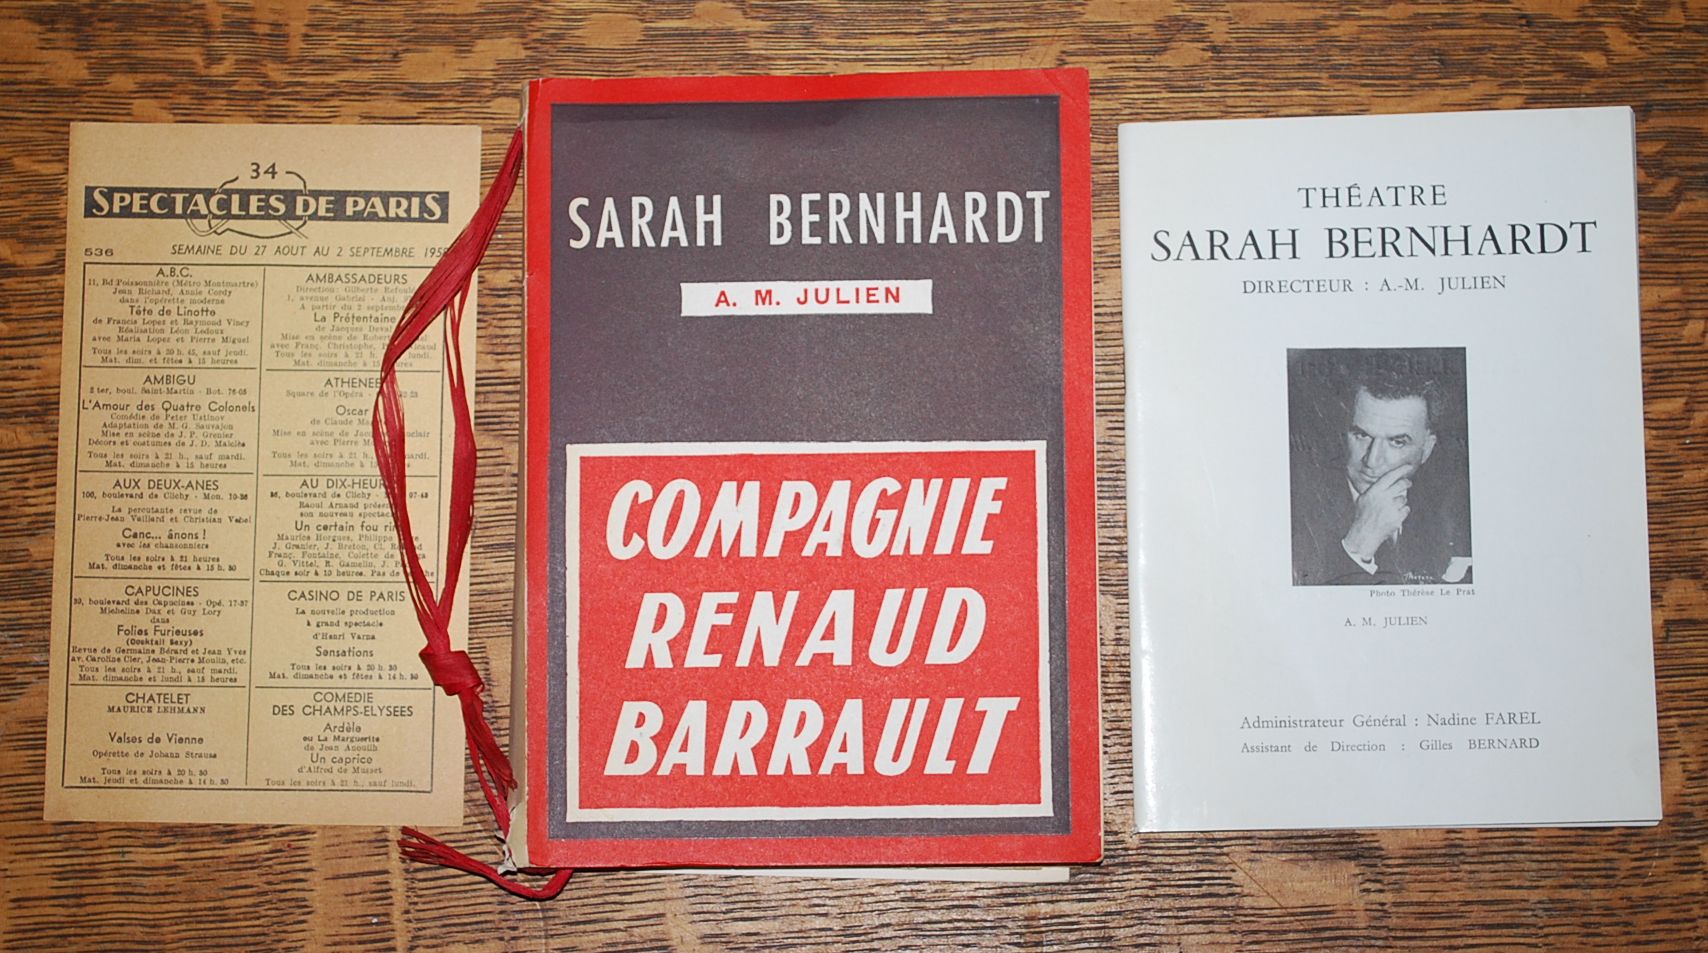 Image for Theatre Sarah Bernhardt by A.M. Julien; Le Theatre Historique, Cahiers de la Compagnie - Madeleine Renaud et Jean-Louis Barrault